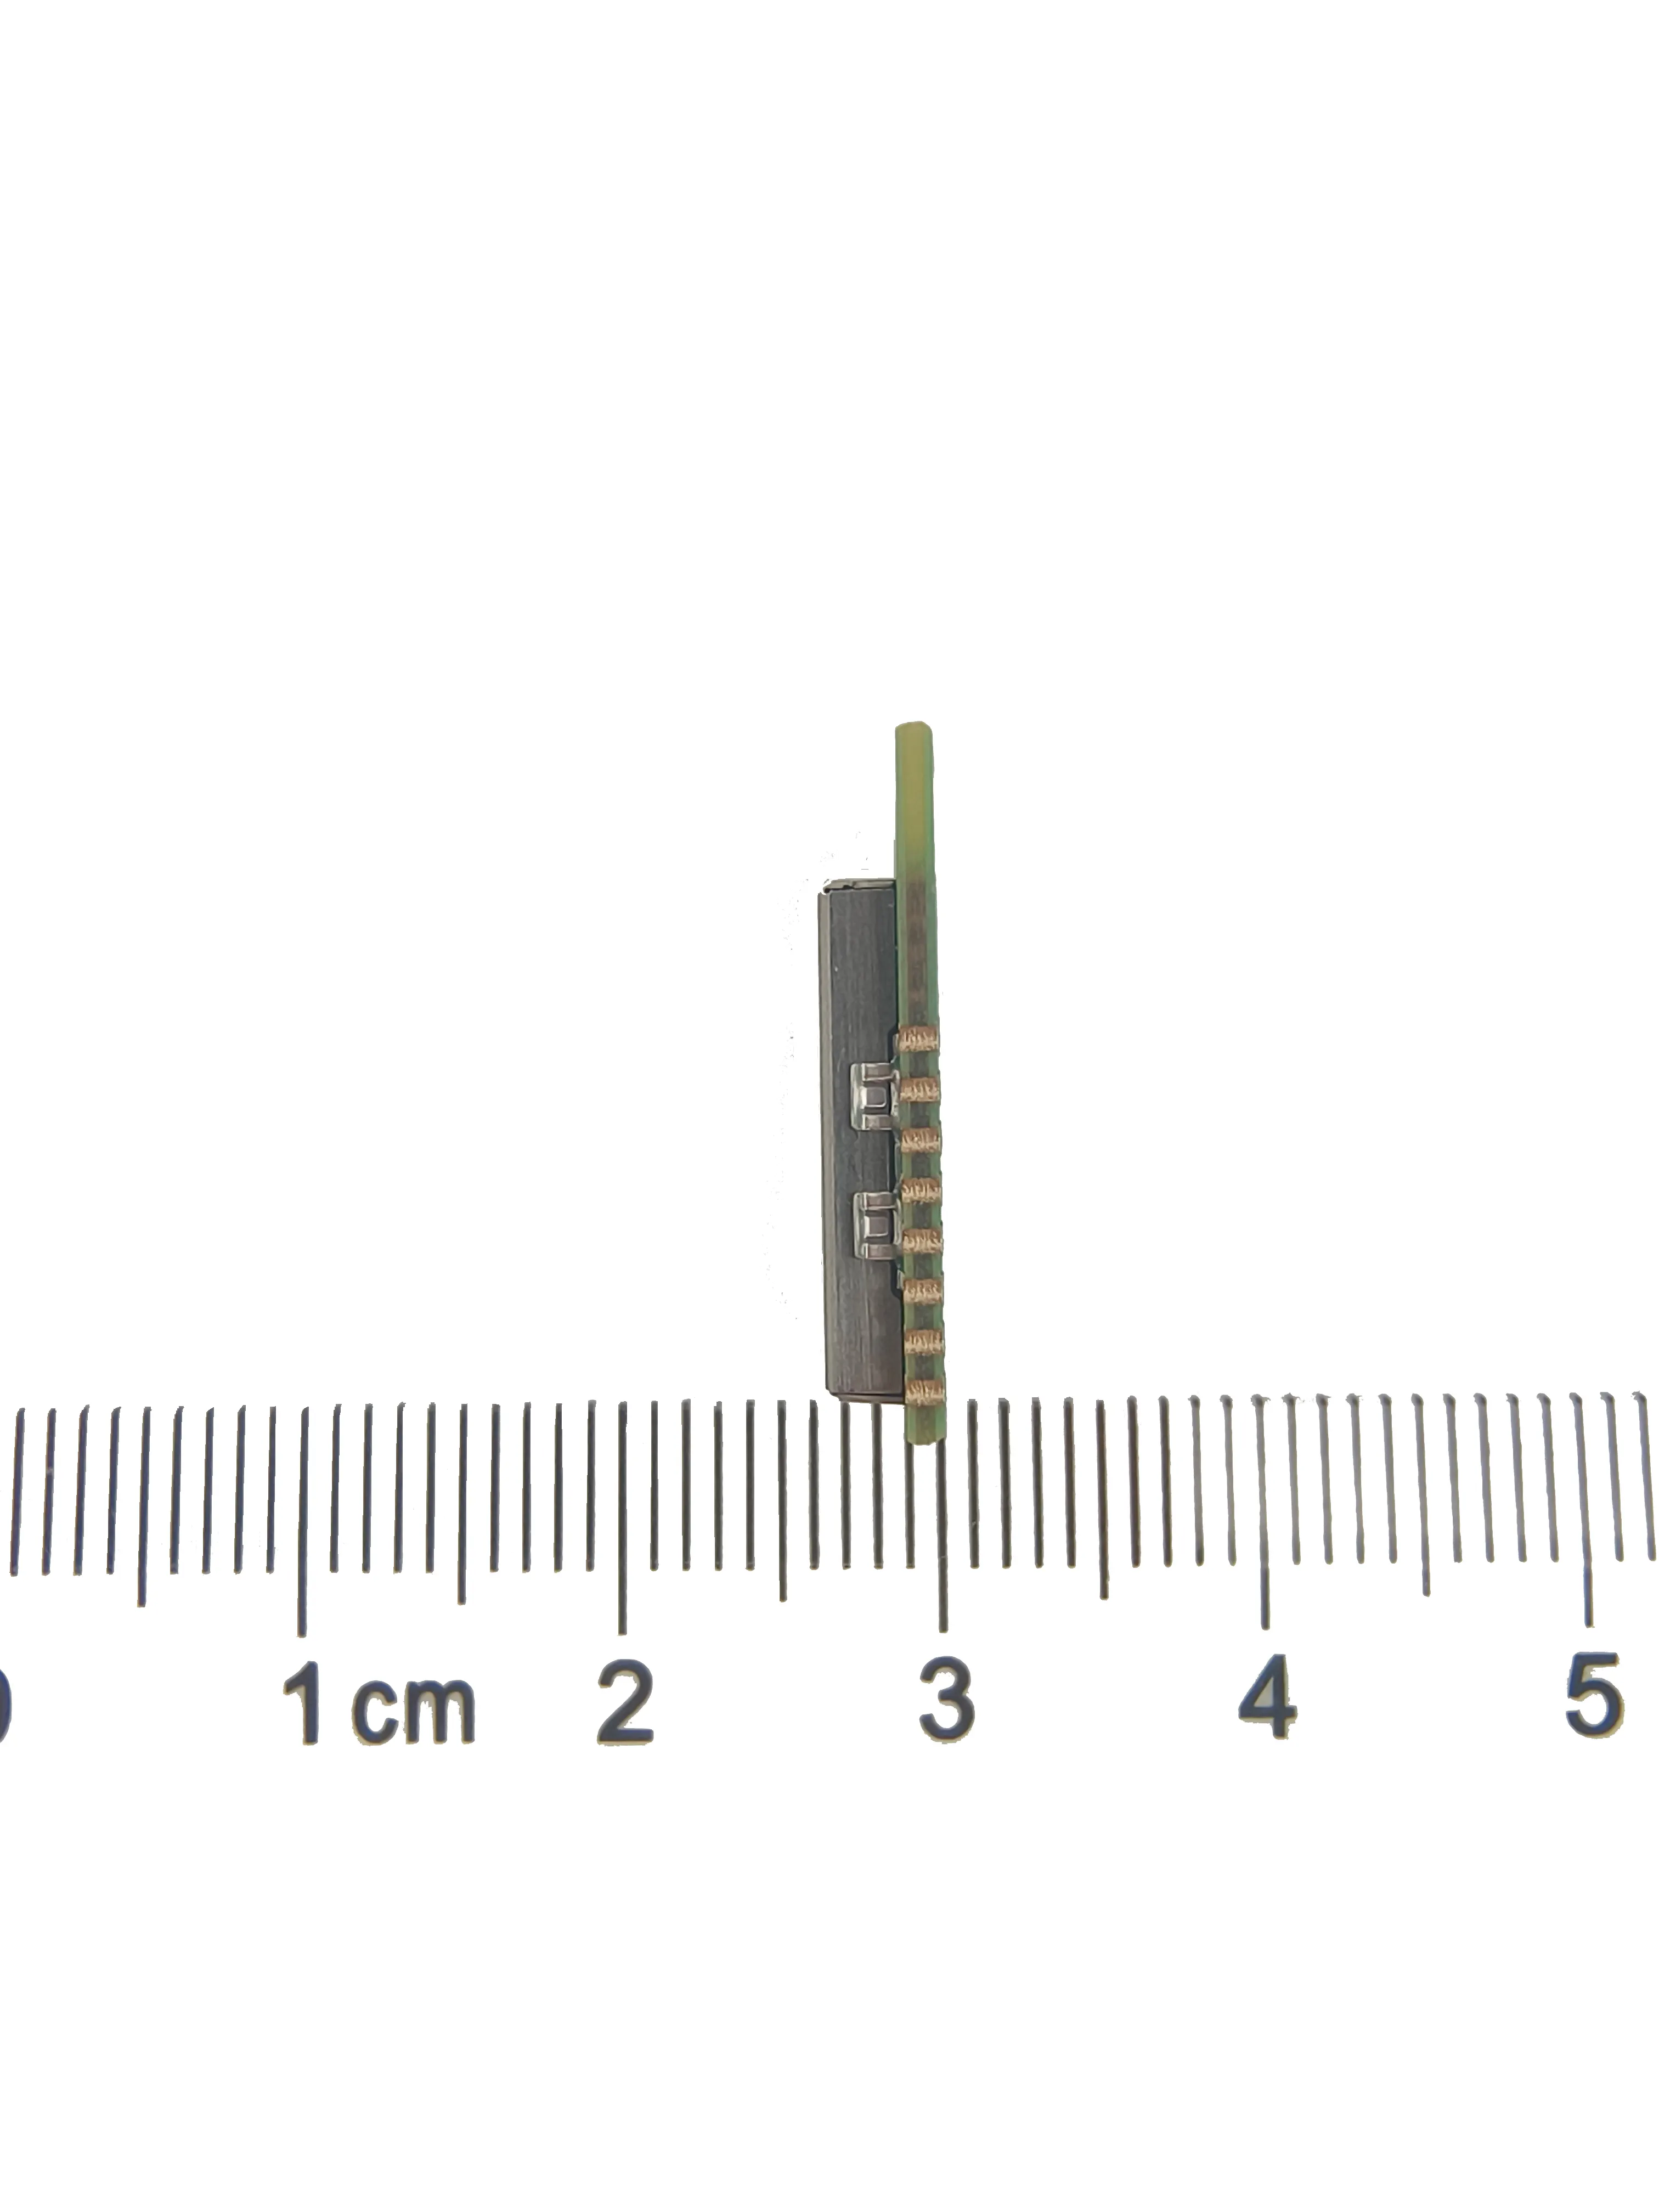 CANSEC 2.4GHz BLE 5.3 & Mesh ST BLUENRG-2340 BLE modülü çip anten işaret etiketi BLE modülü giyilebilir